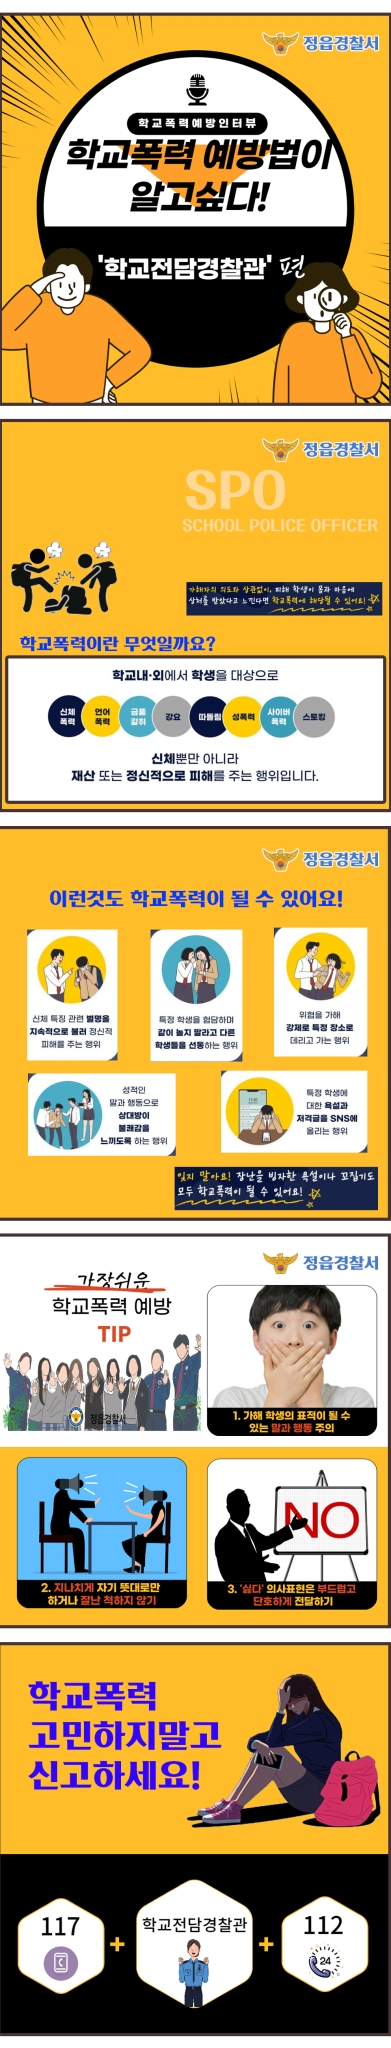 정읍경찰서 여성청소년과_학교폭력예방 카드뉴스